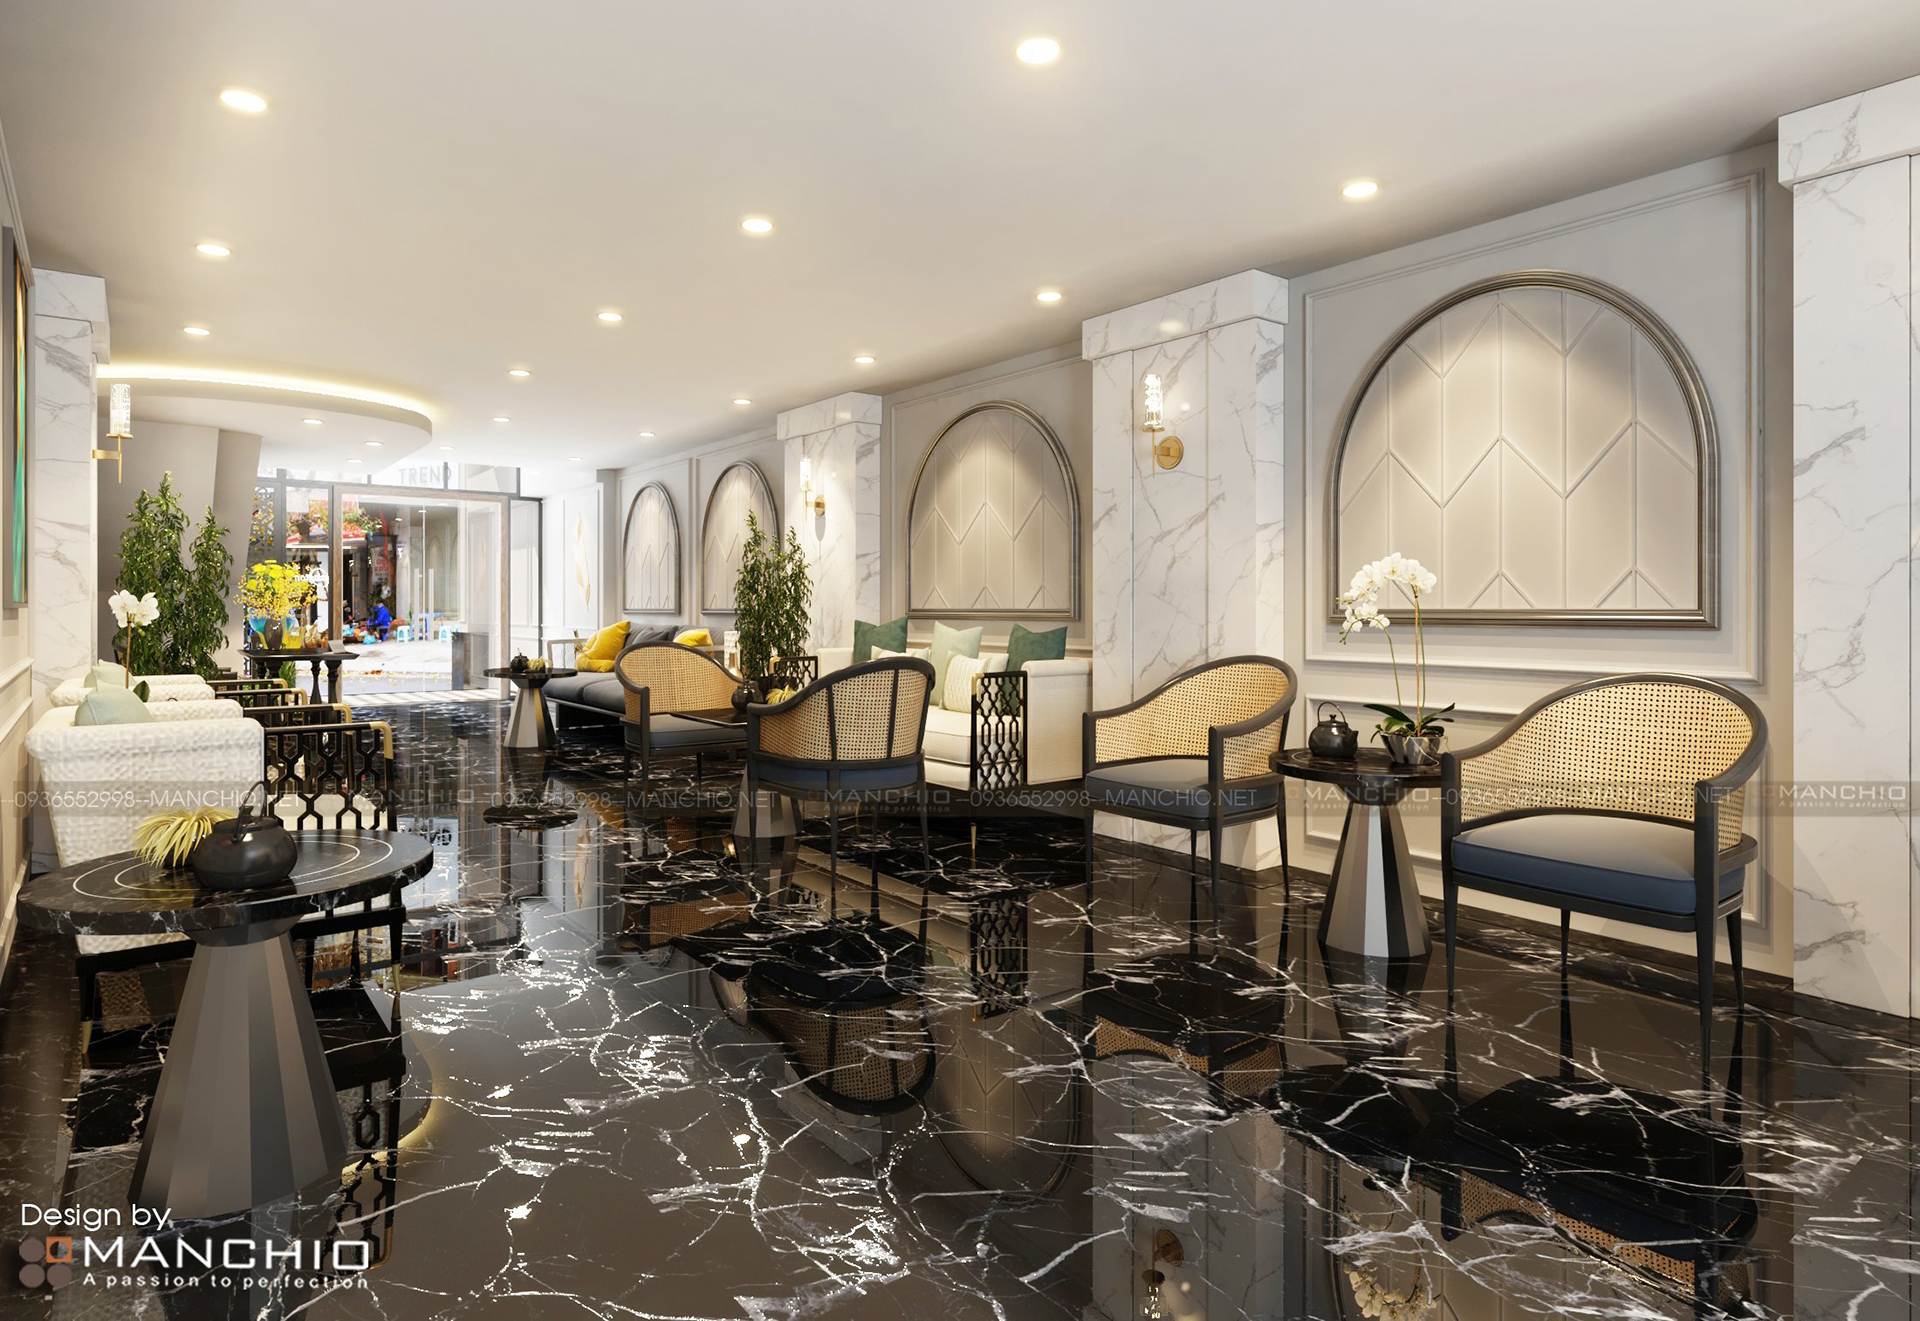 Hình ảnh Thiết kế nội thất khách sạn Blissington 65 Hàng Bè - Hoàn Kiếm - Hà Nội